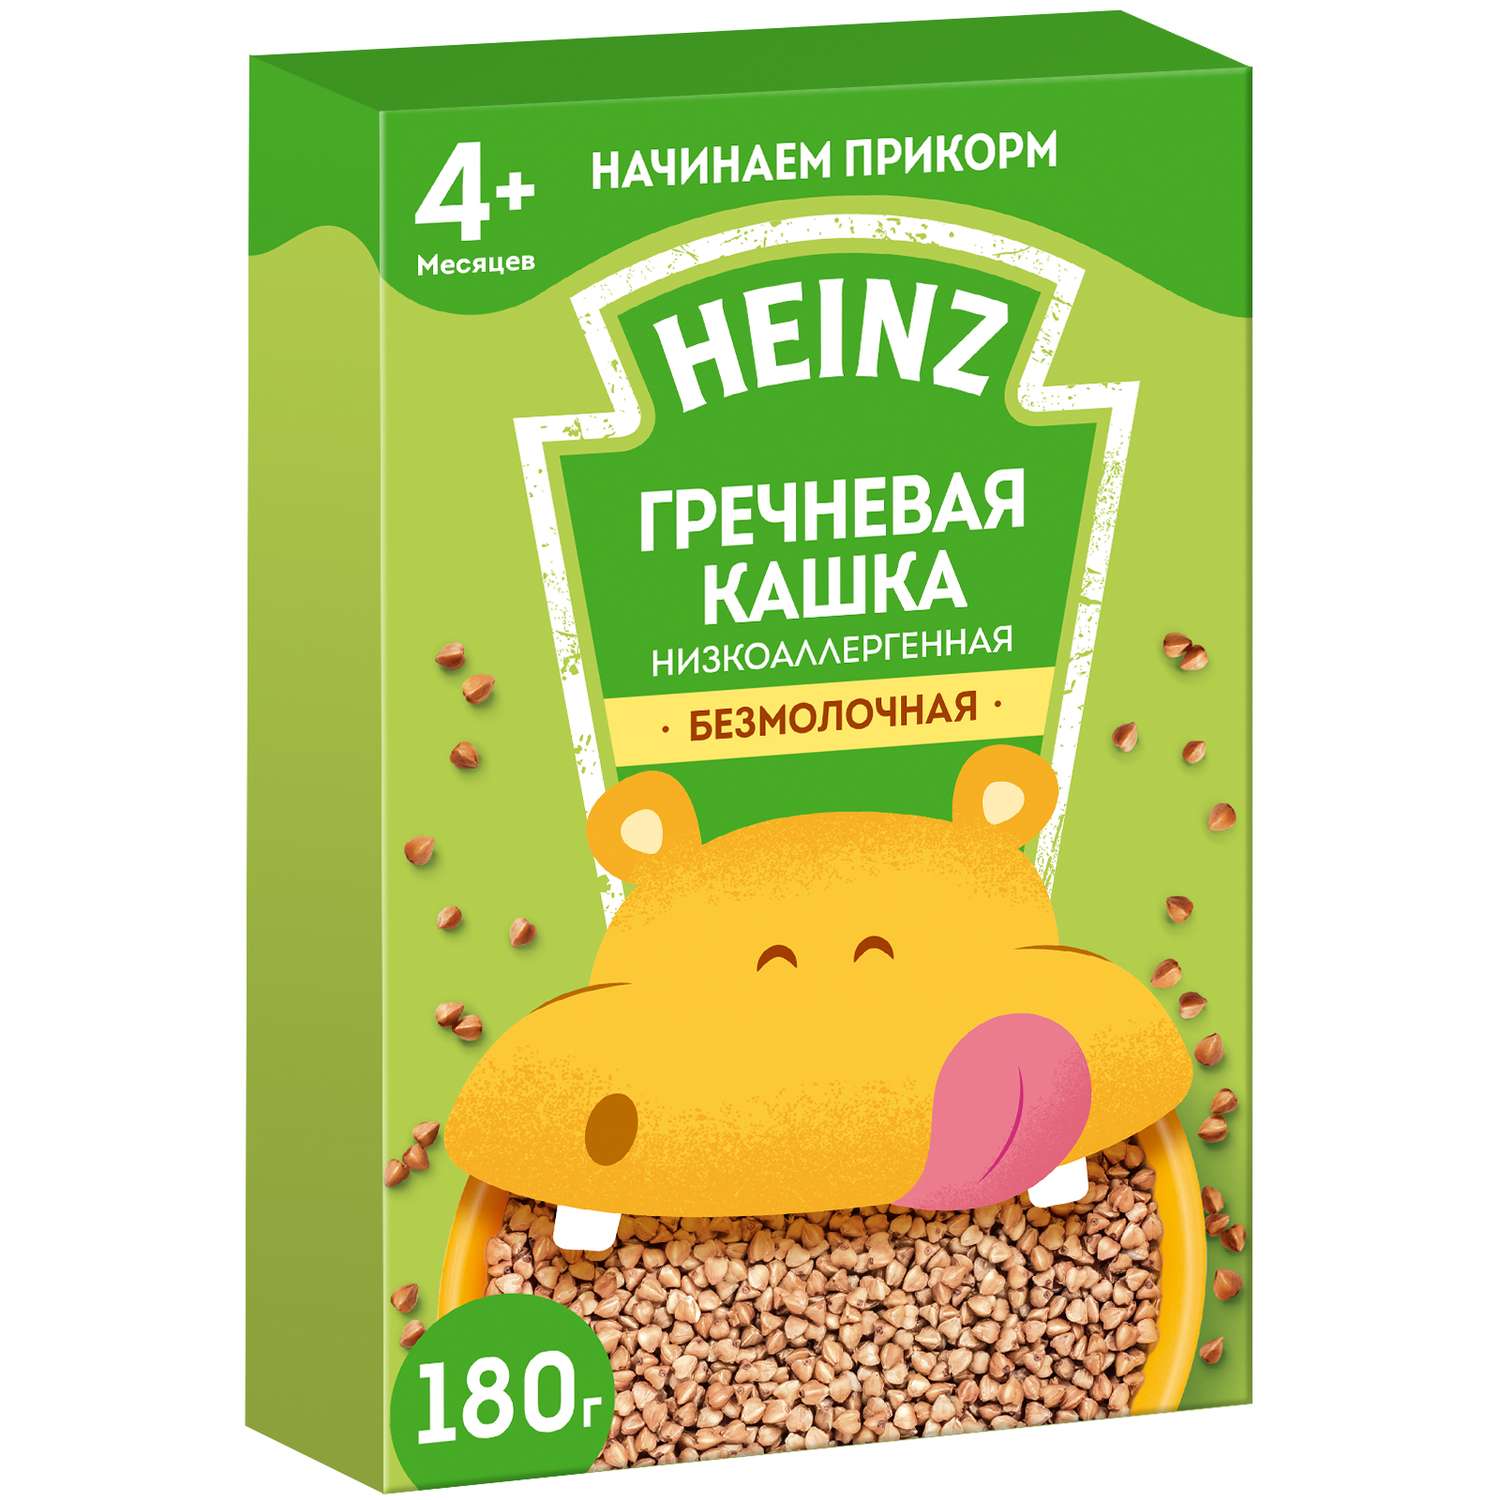 Каша низкоаллергенная гречневая Heinz — купить в Москве в интернет-магазине manikyrsha.ru